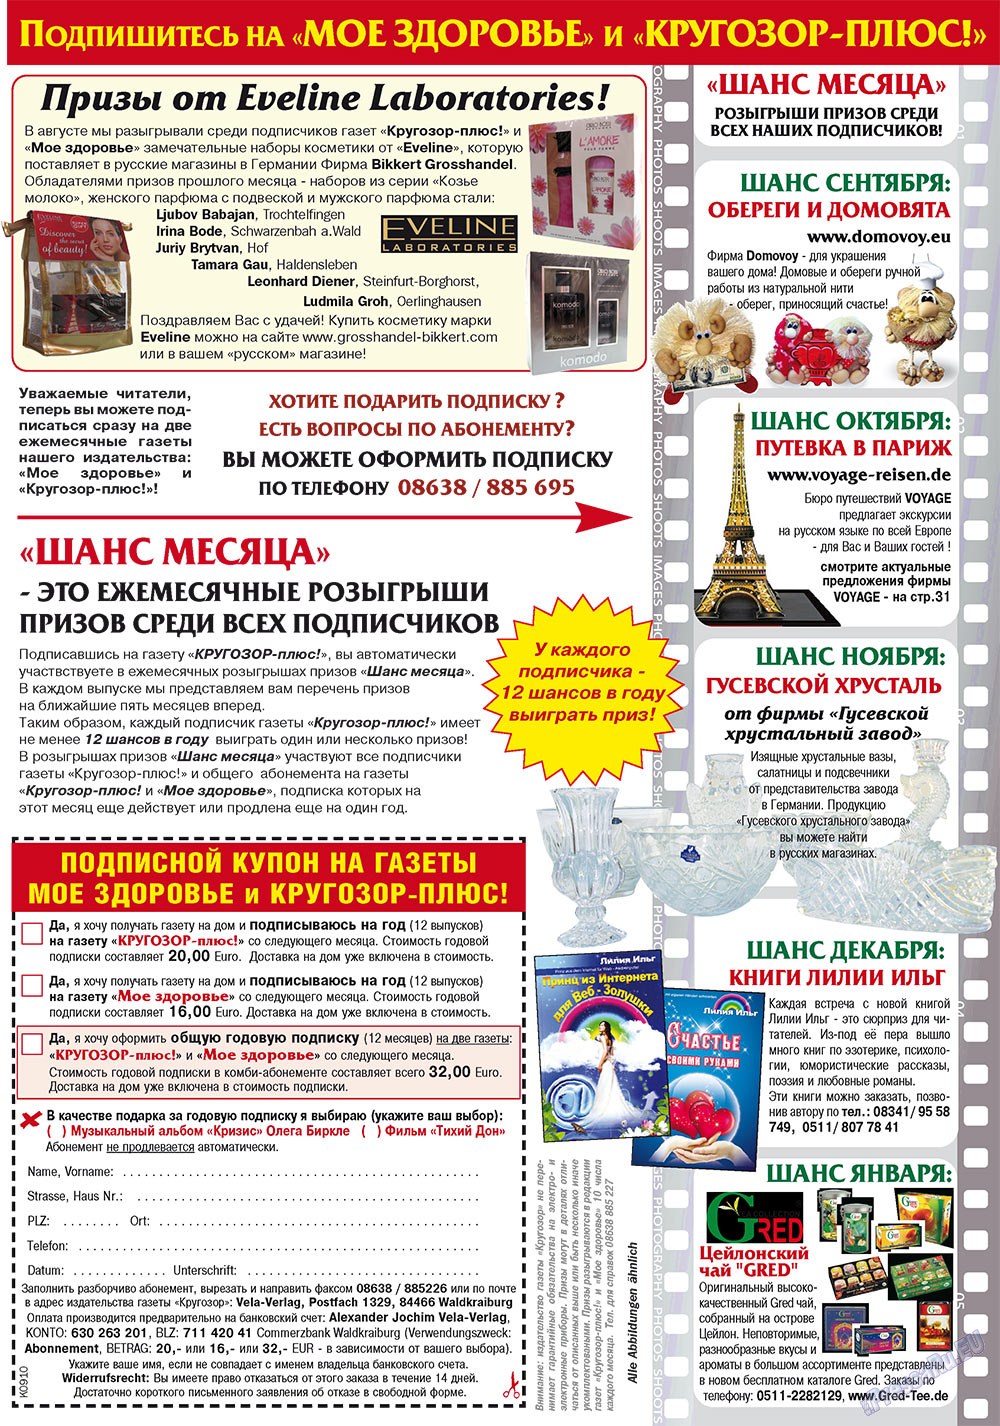 Кругозор плюс!, газета. 2010 №9 стр.3